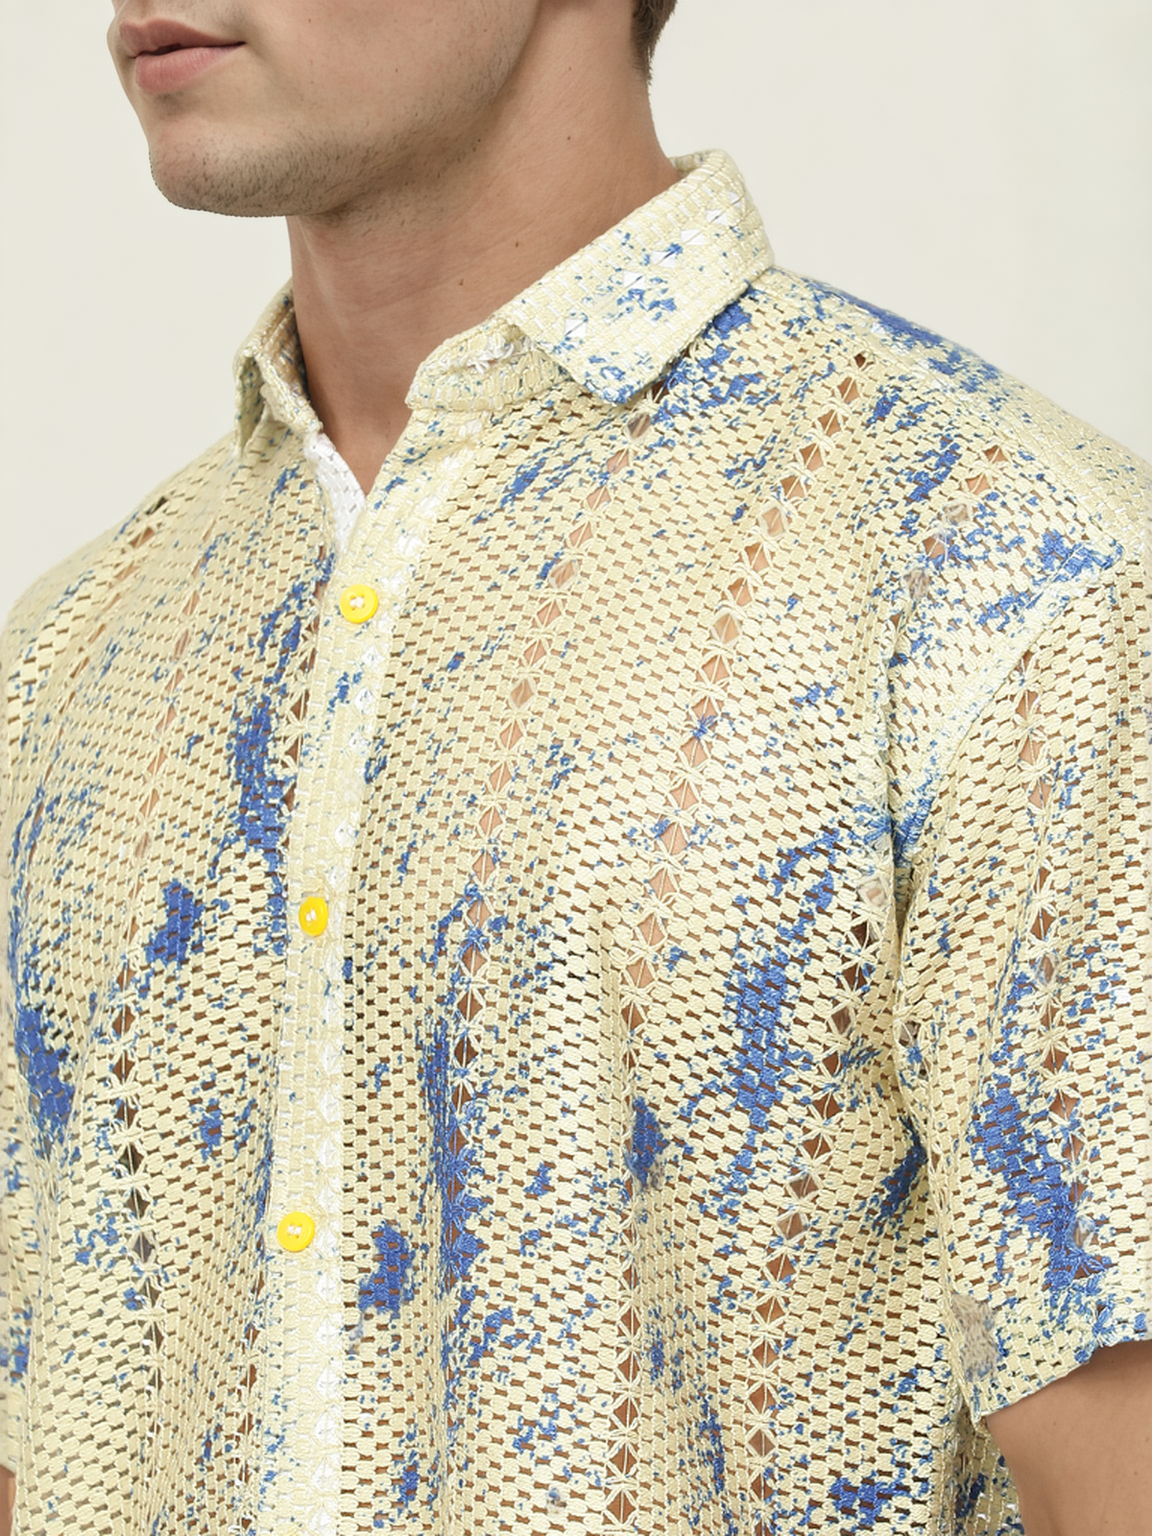 Hemsters Threaded Crochet Shirt Blue & White Color Shirt